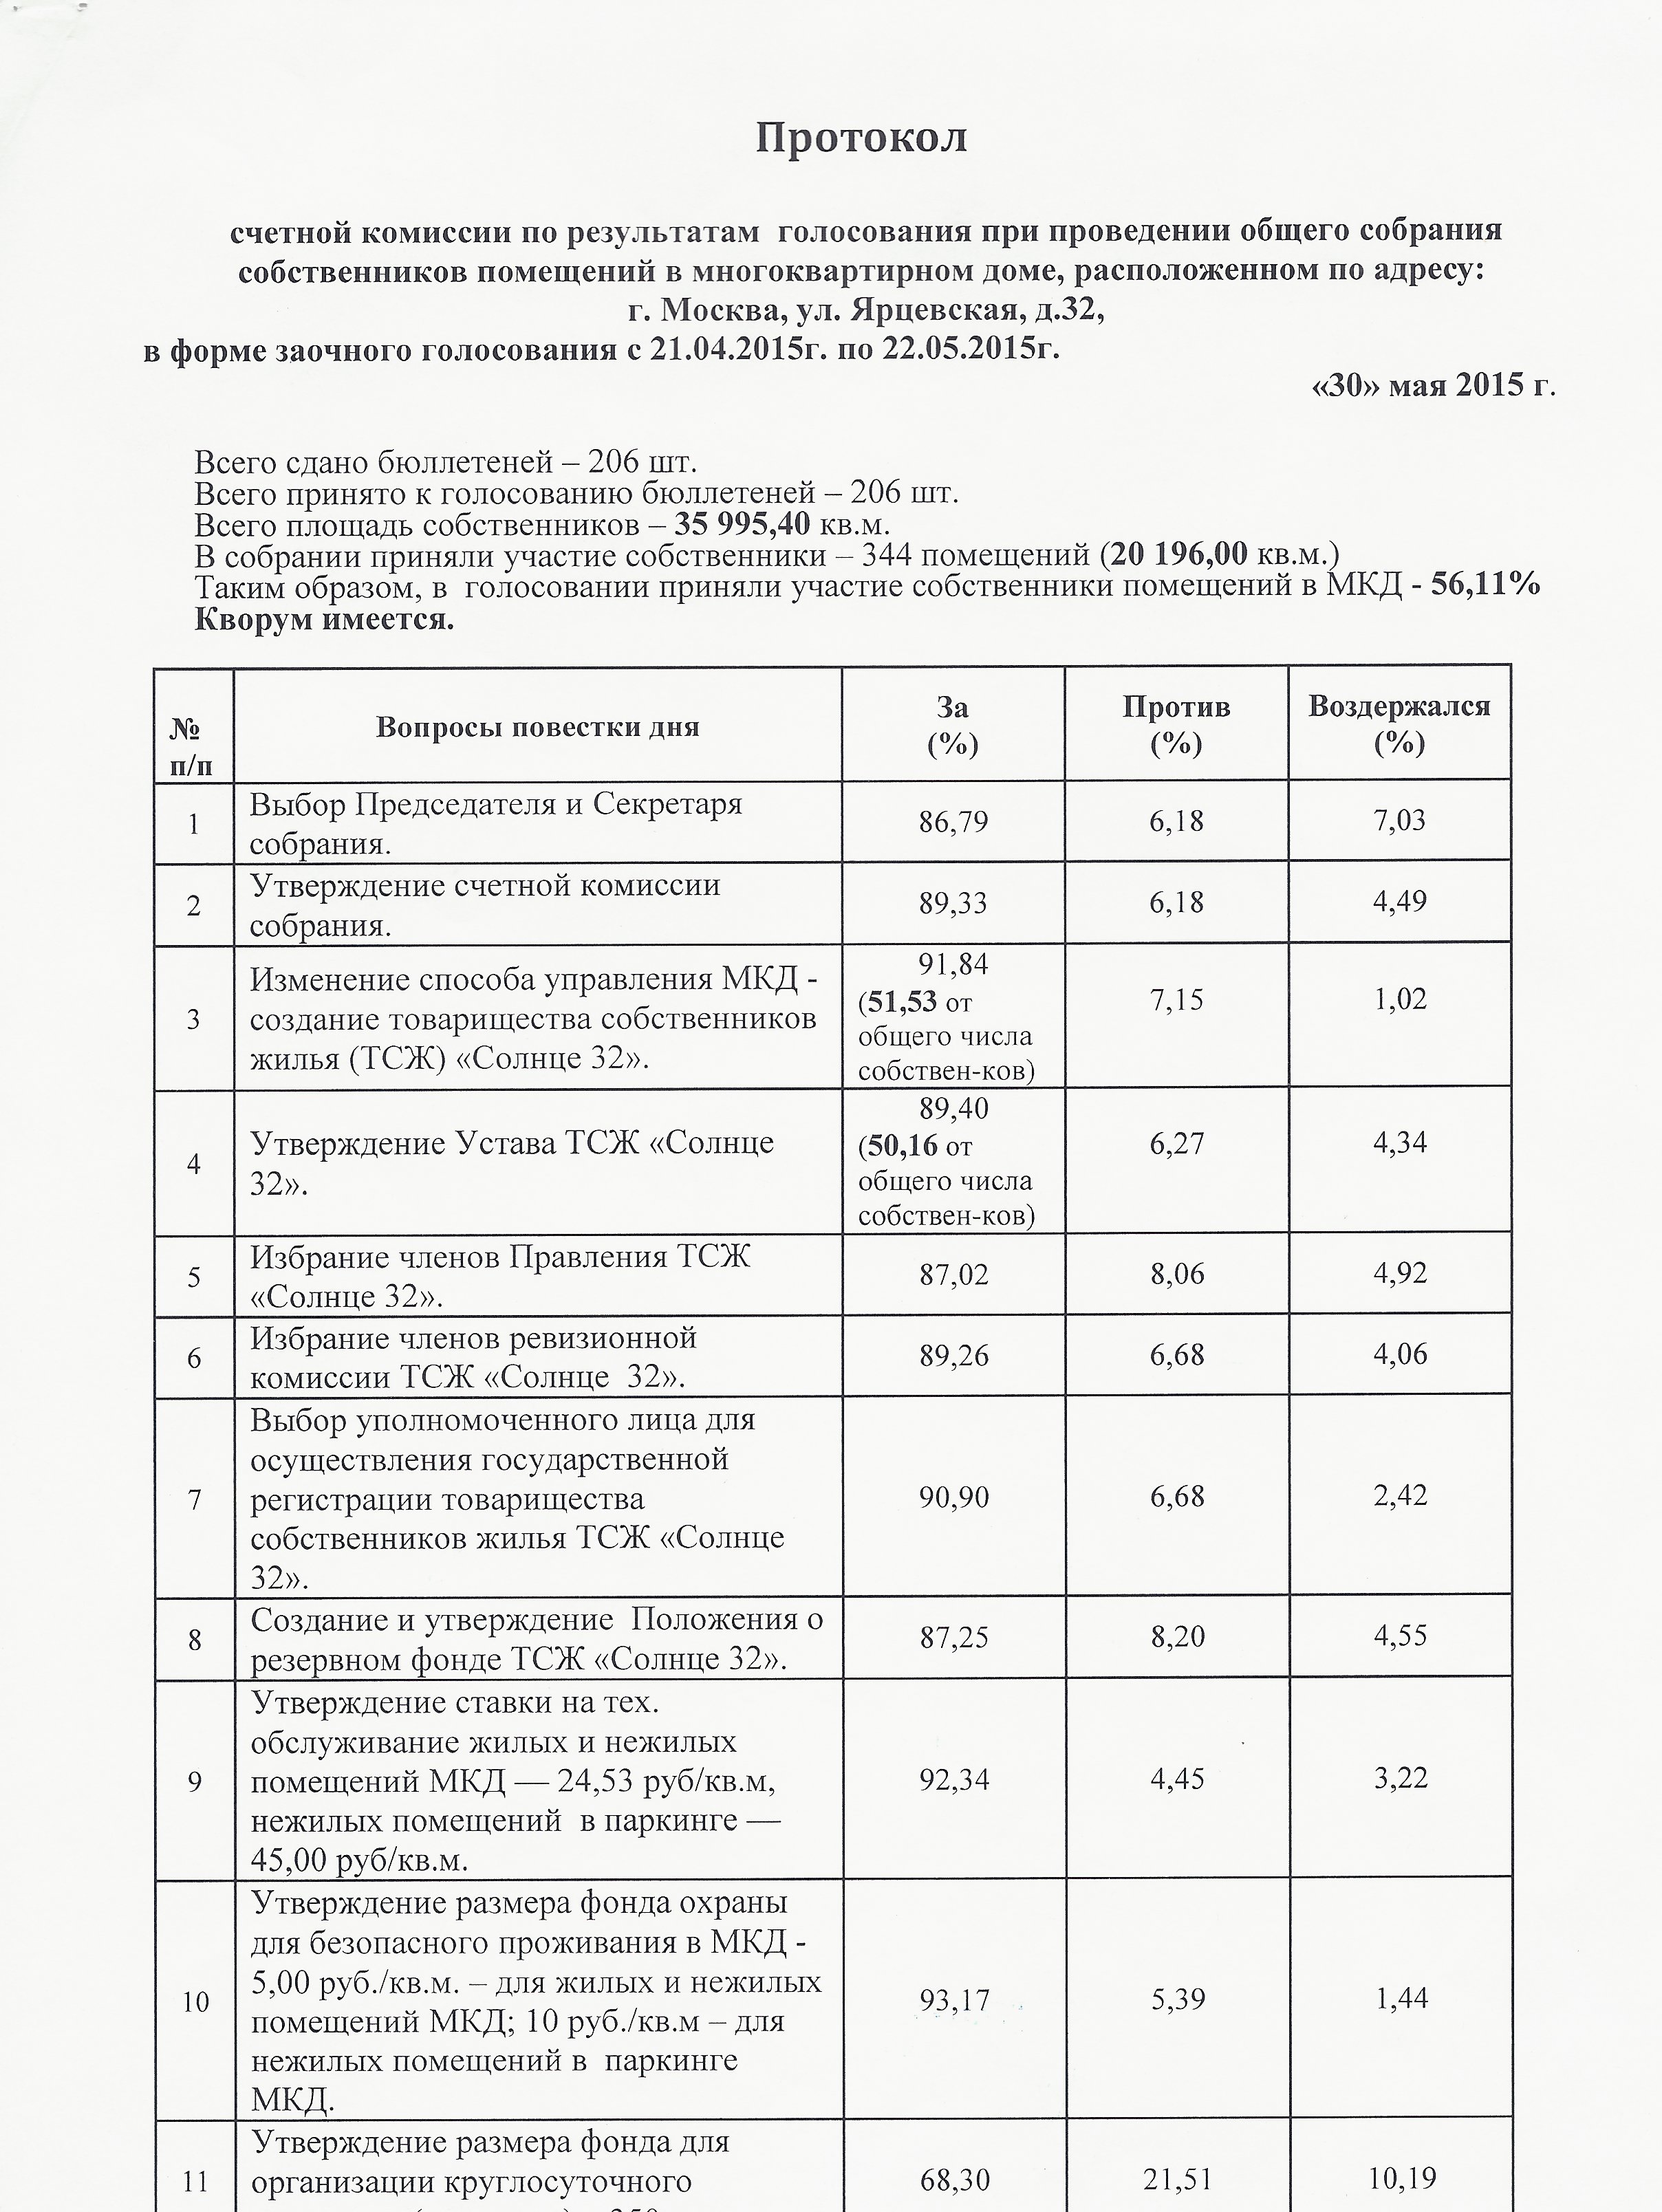 Протокол счетной комиссии от 30.05.2015г. стр.1